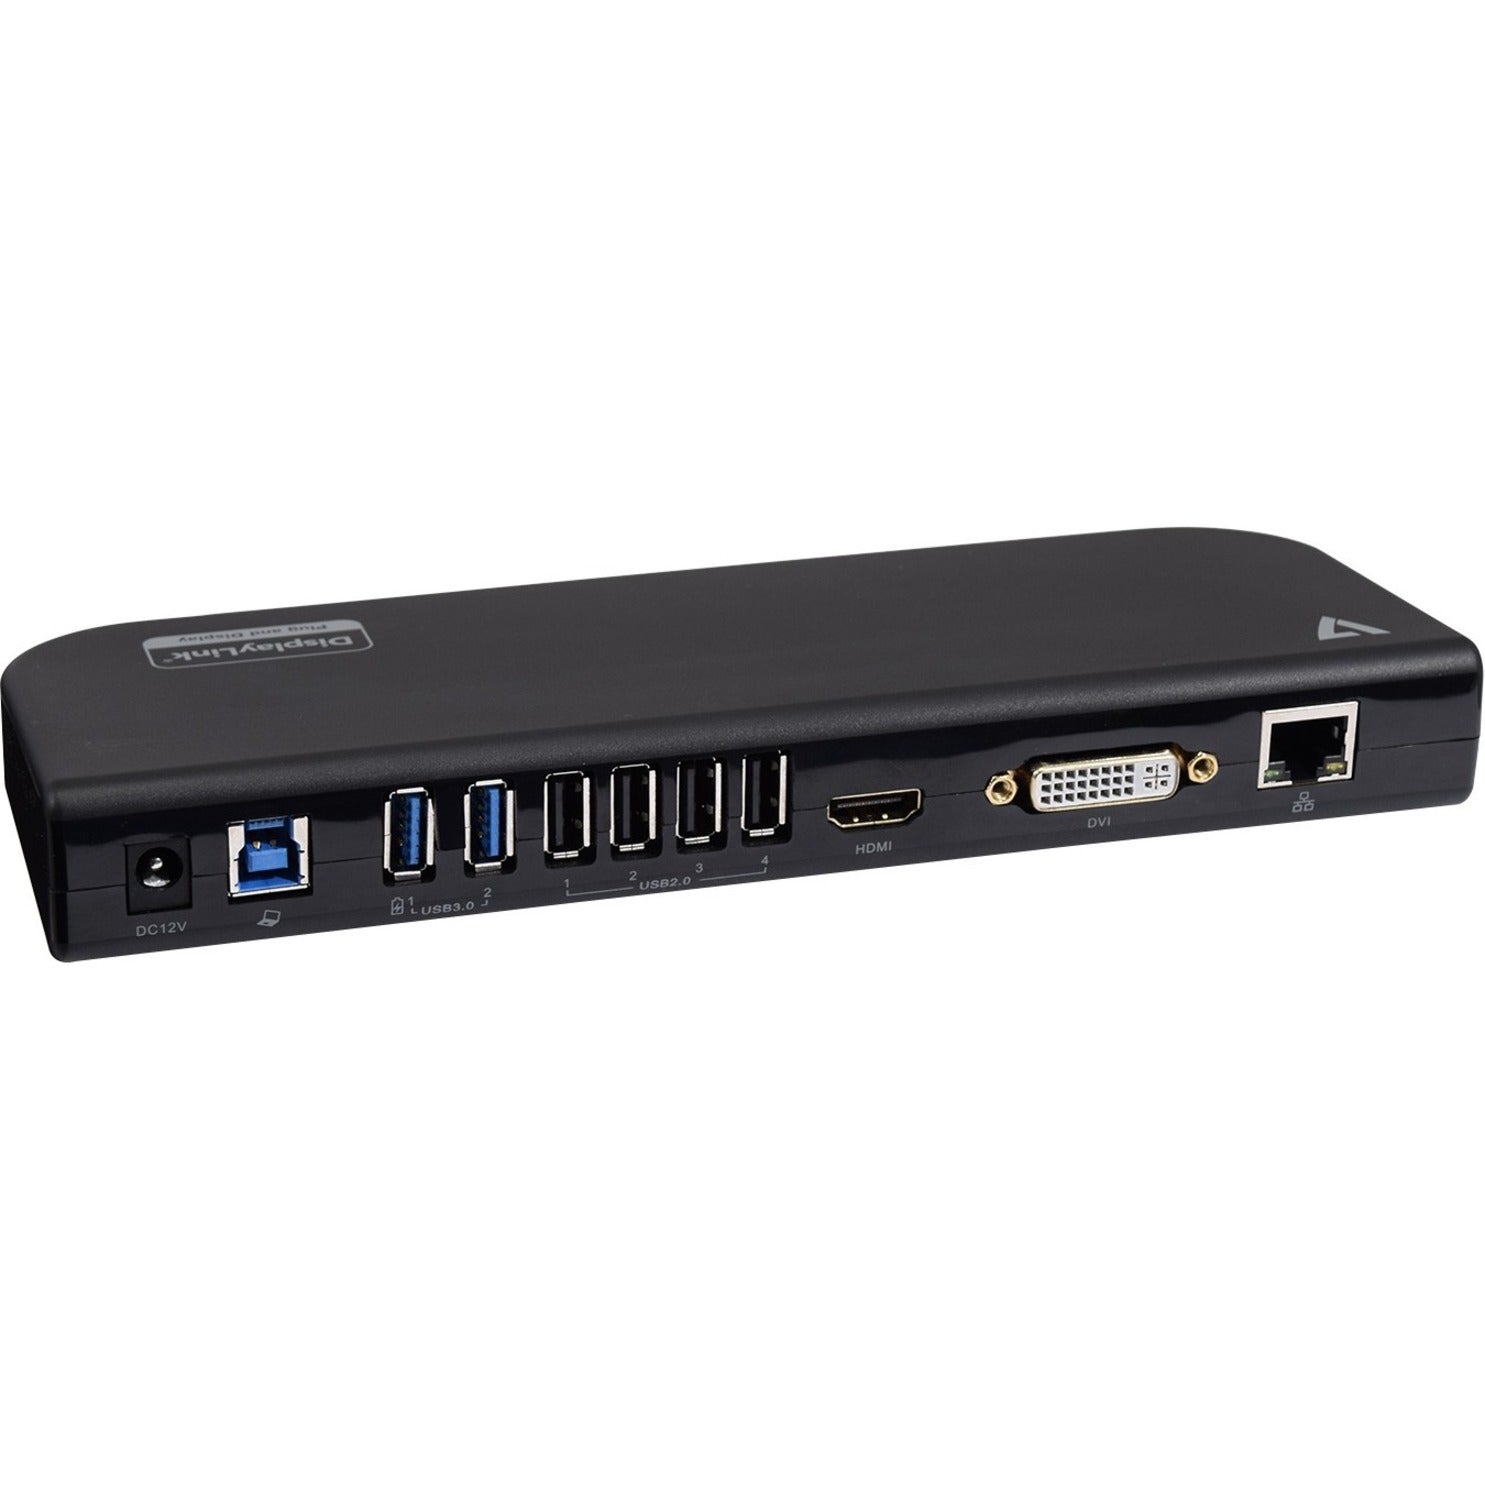 V7 UDDS2 USB Dual DisplayLink Docking Station, 2K QHD, 6 USB Ports, Ethernet